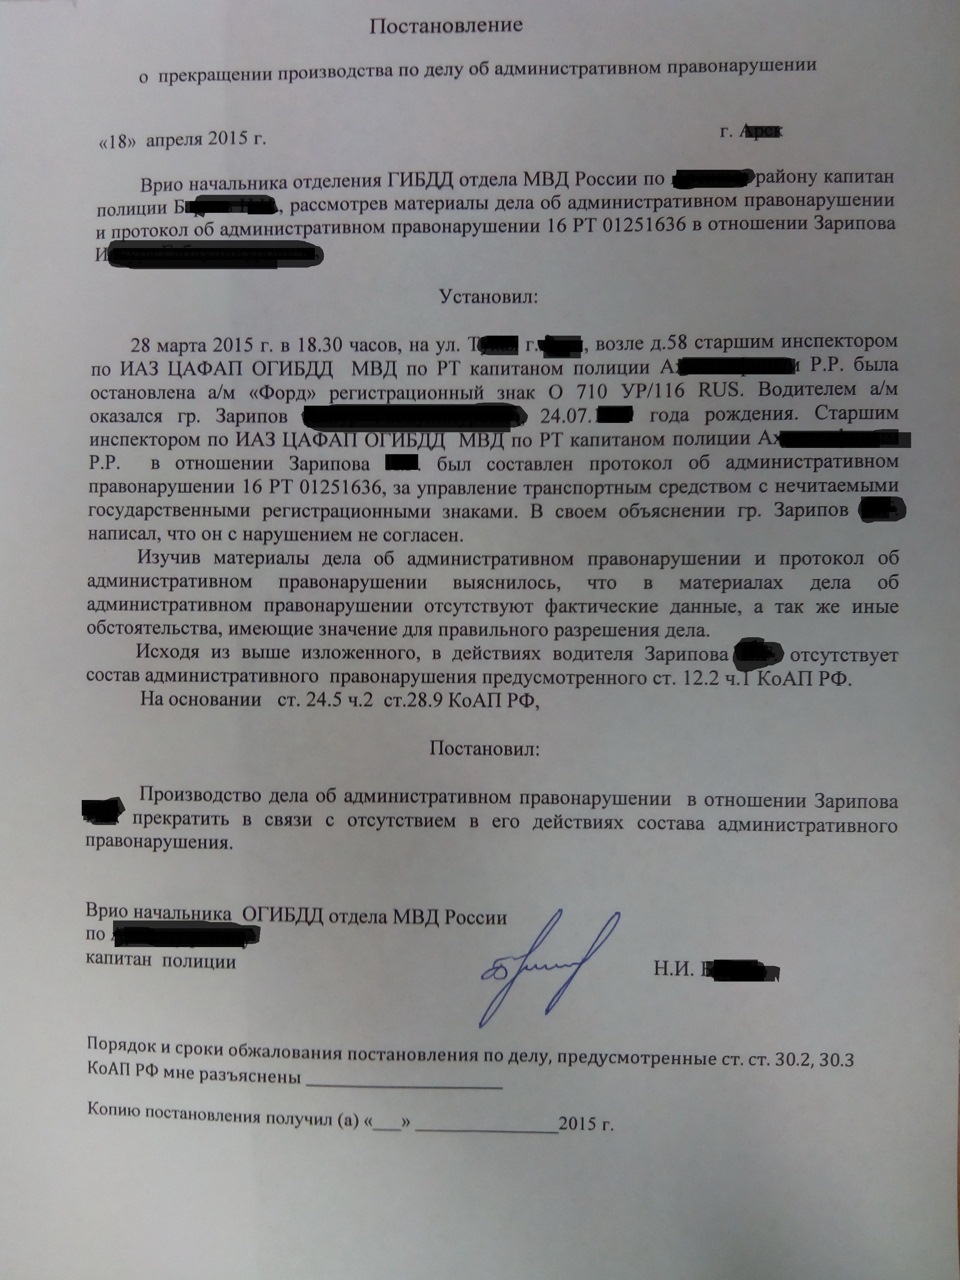 Протокол по ч.2 ст. 12.2 КОАП РФ